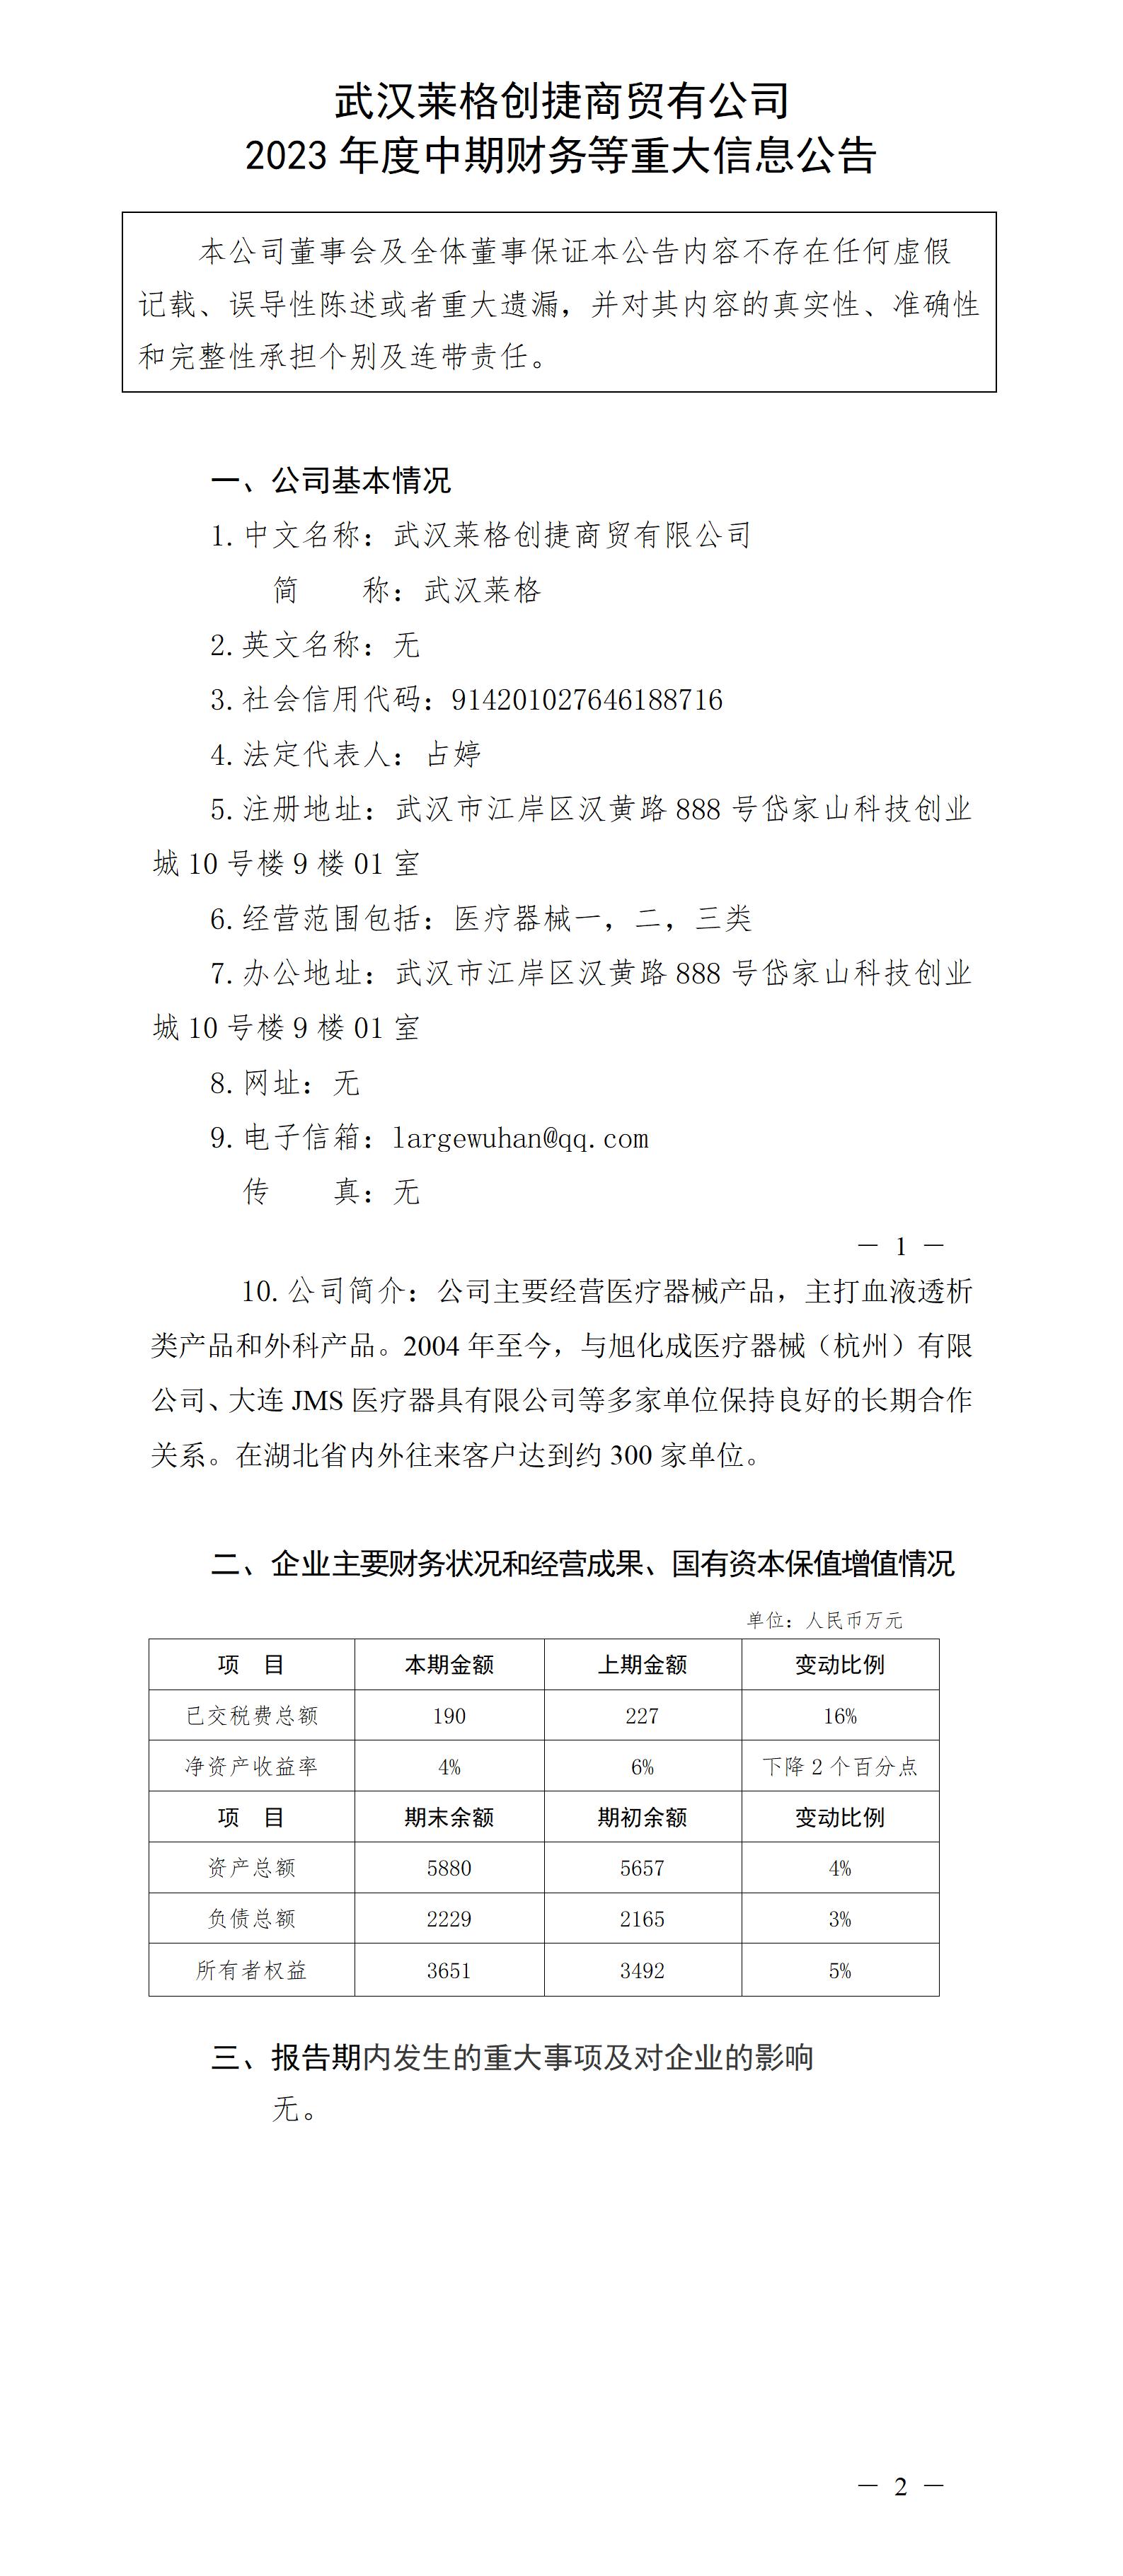 武漢萊格創捷商貿有限公司2023年度中期財務等重大信息公告_01.jpg